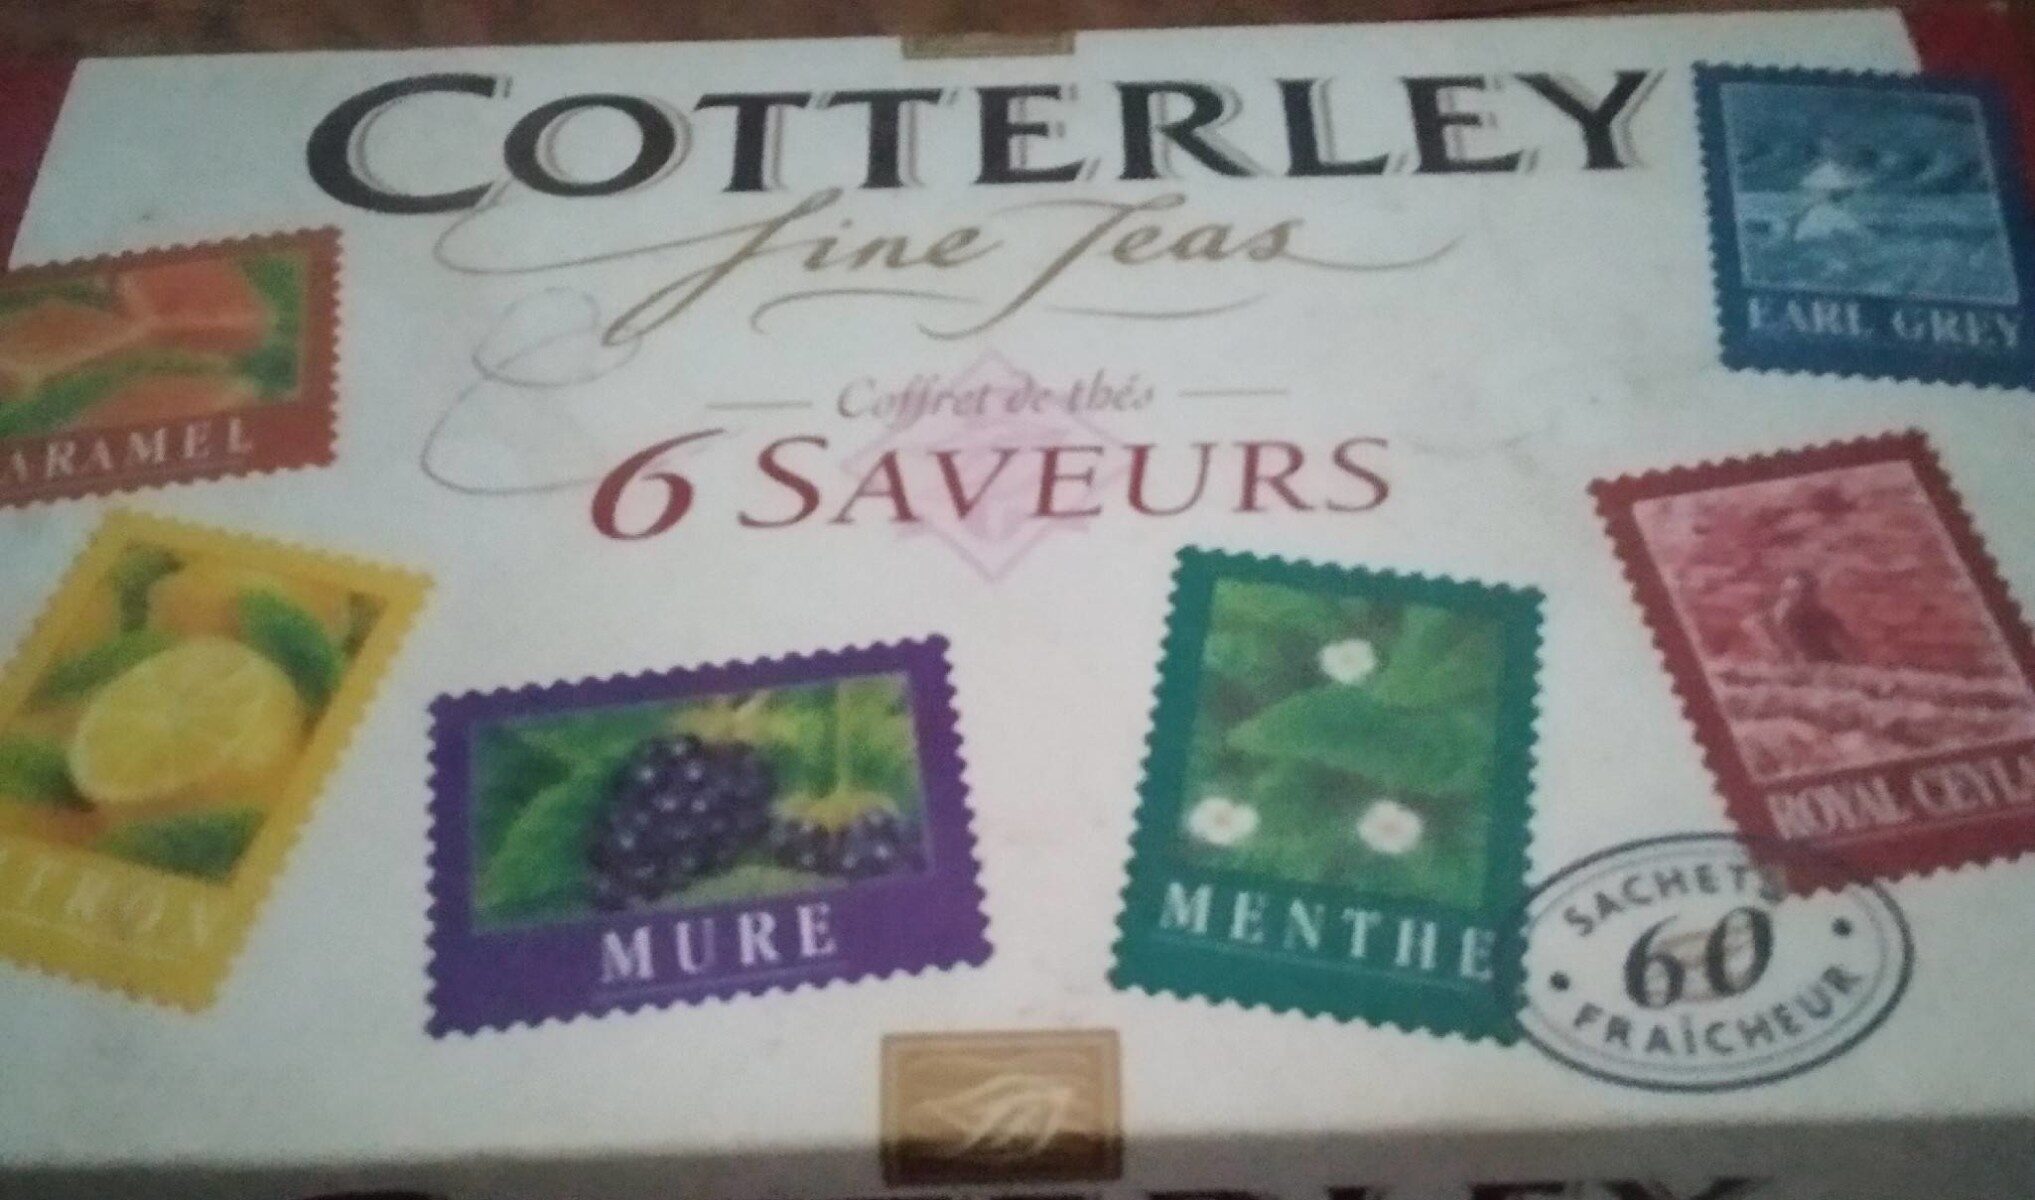 Cotterley Fine Teaser Coffret de thé 6 saveurs - Produit